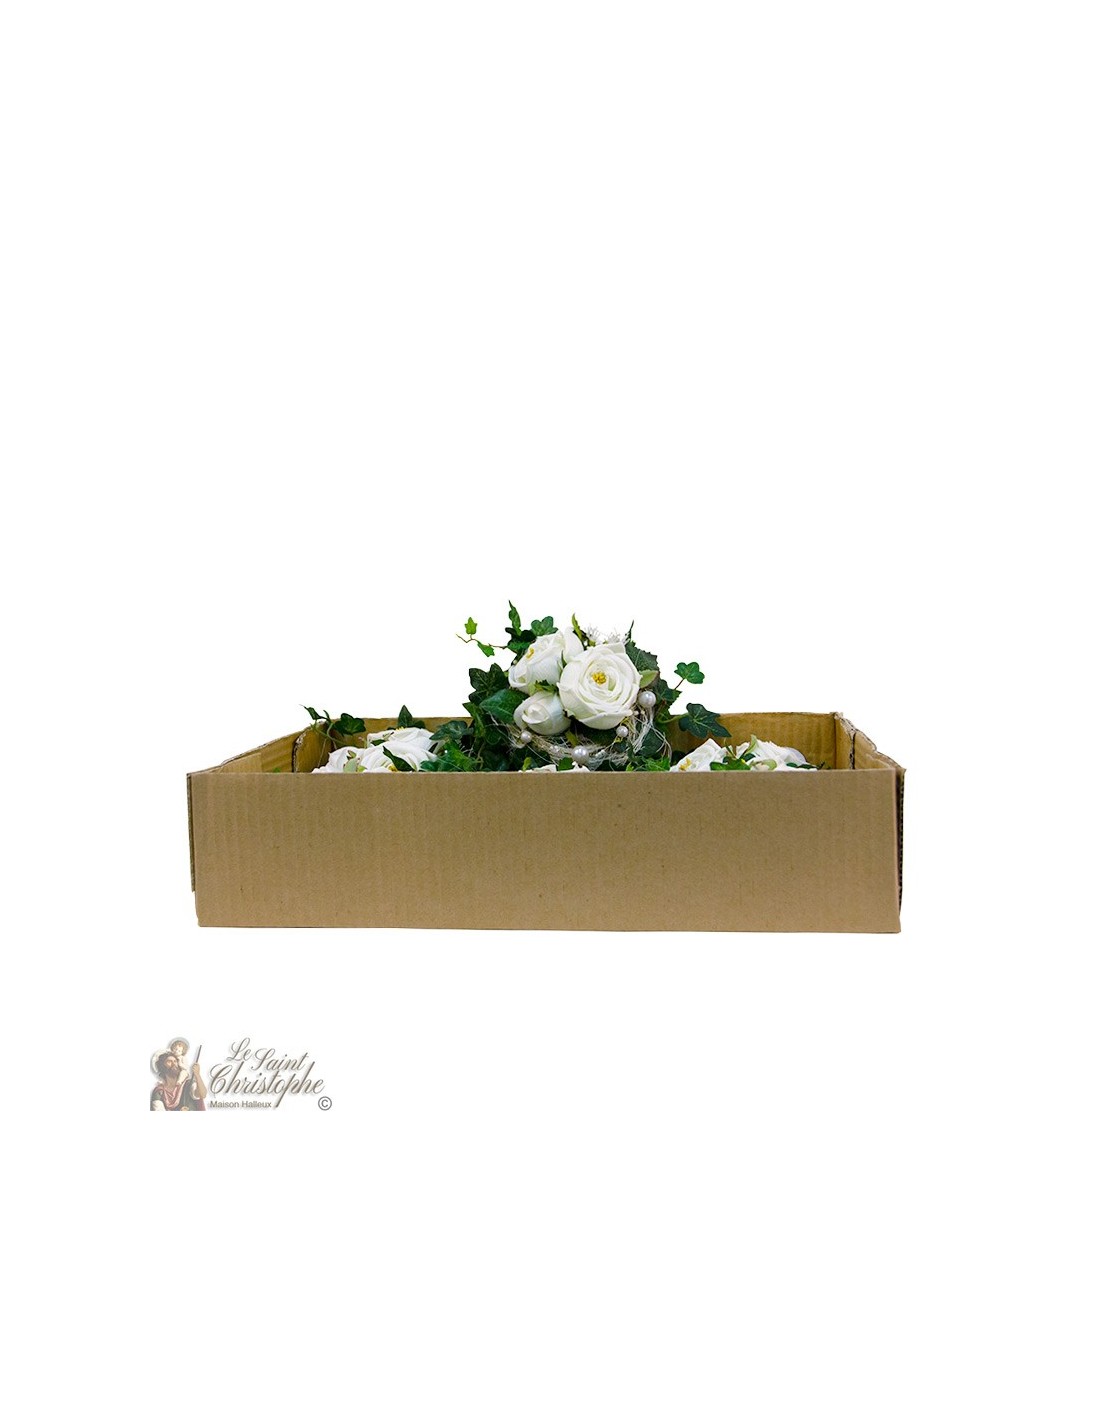 vijandigheid in verlegenheid gebracht Pence Doos met boeketten bloemen - witte bloemenkrans